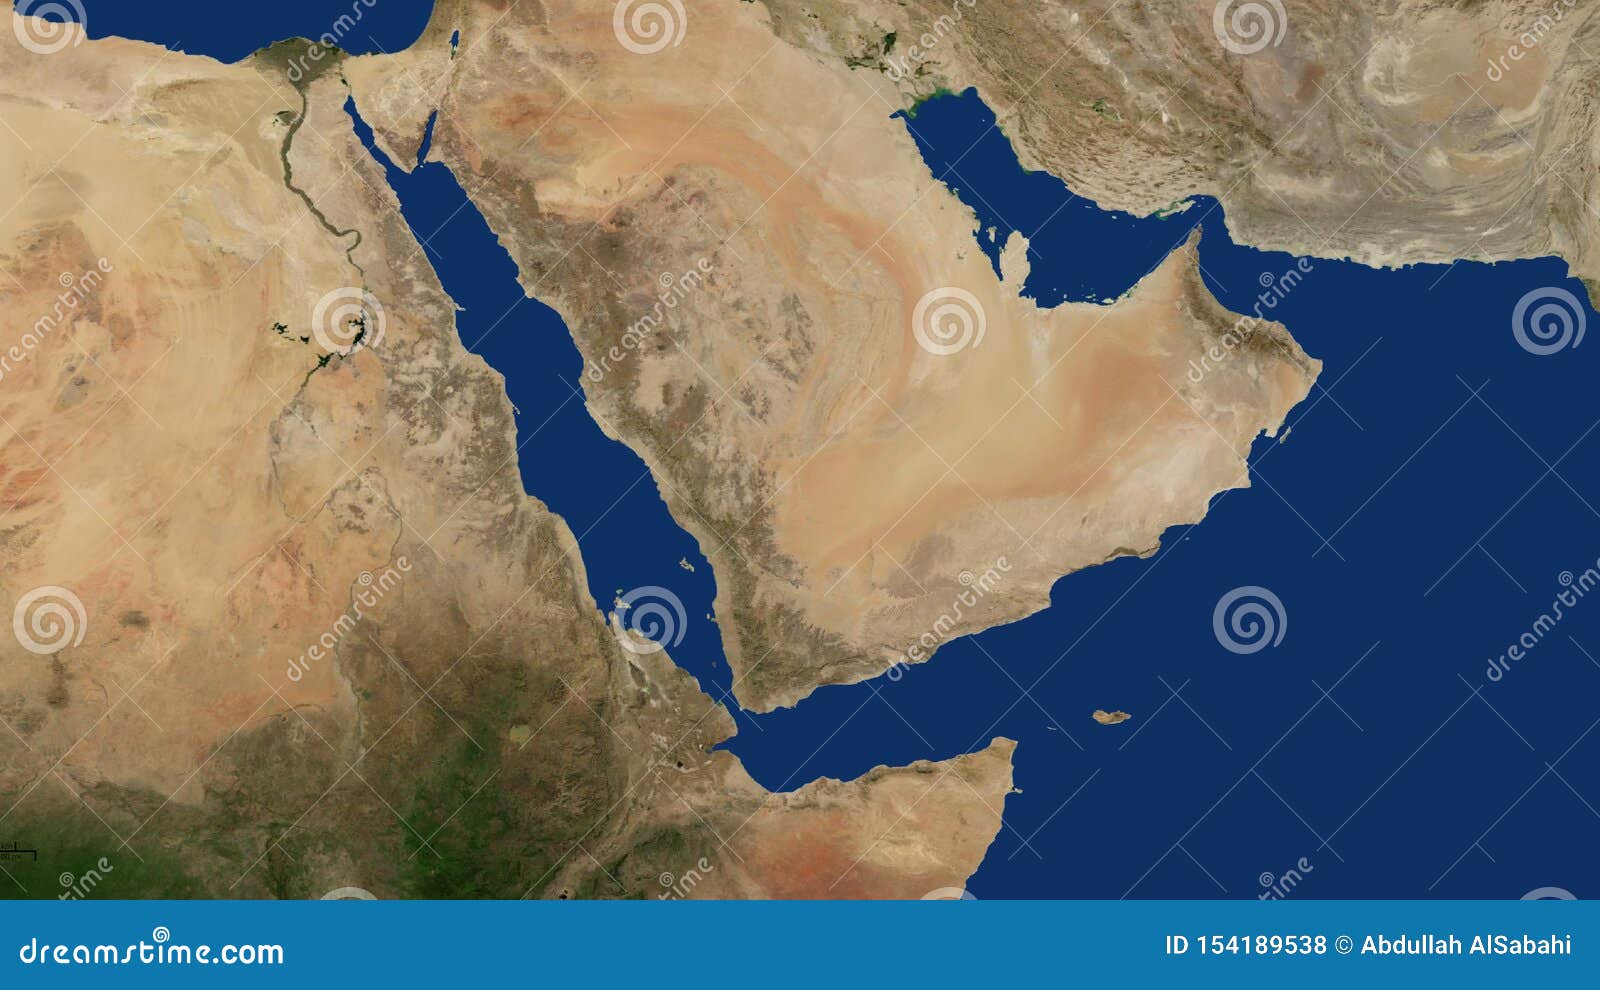 Carte Du Yemen Arabie Saoudite Oman Qatar Emirats La Mer Rouge Iran Golfe Persique Golfe Arabe Irak Jordanie Israelien Photo Stock Image Du Iran Carte